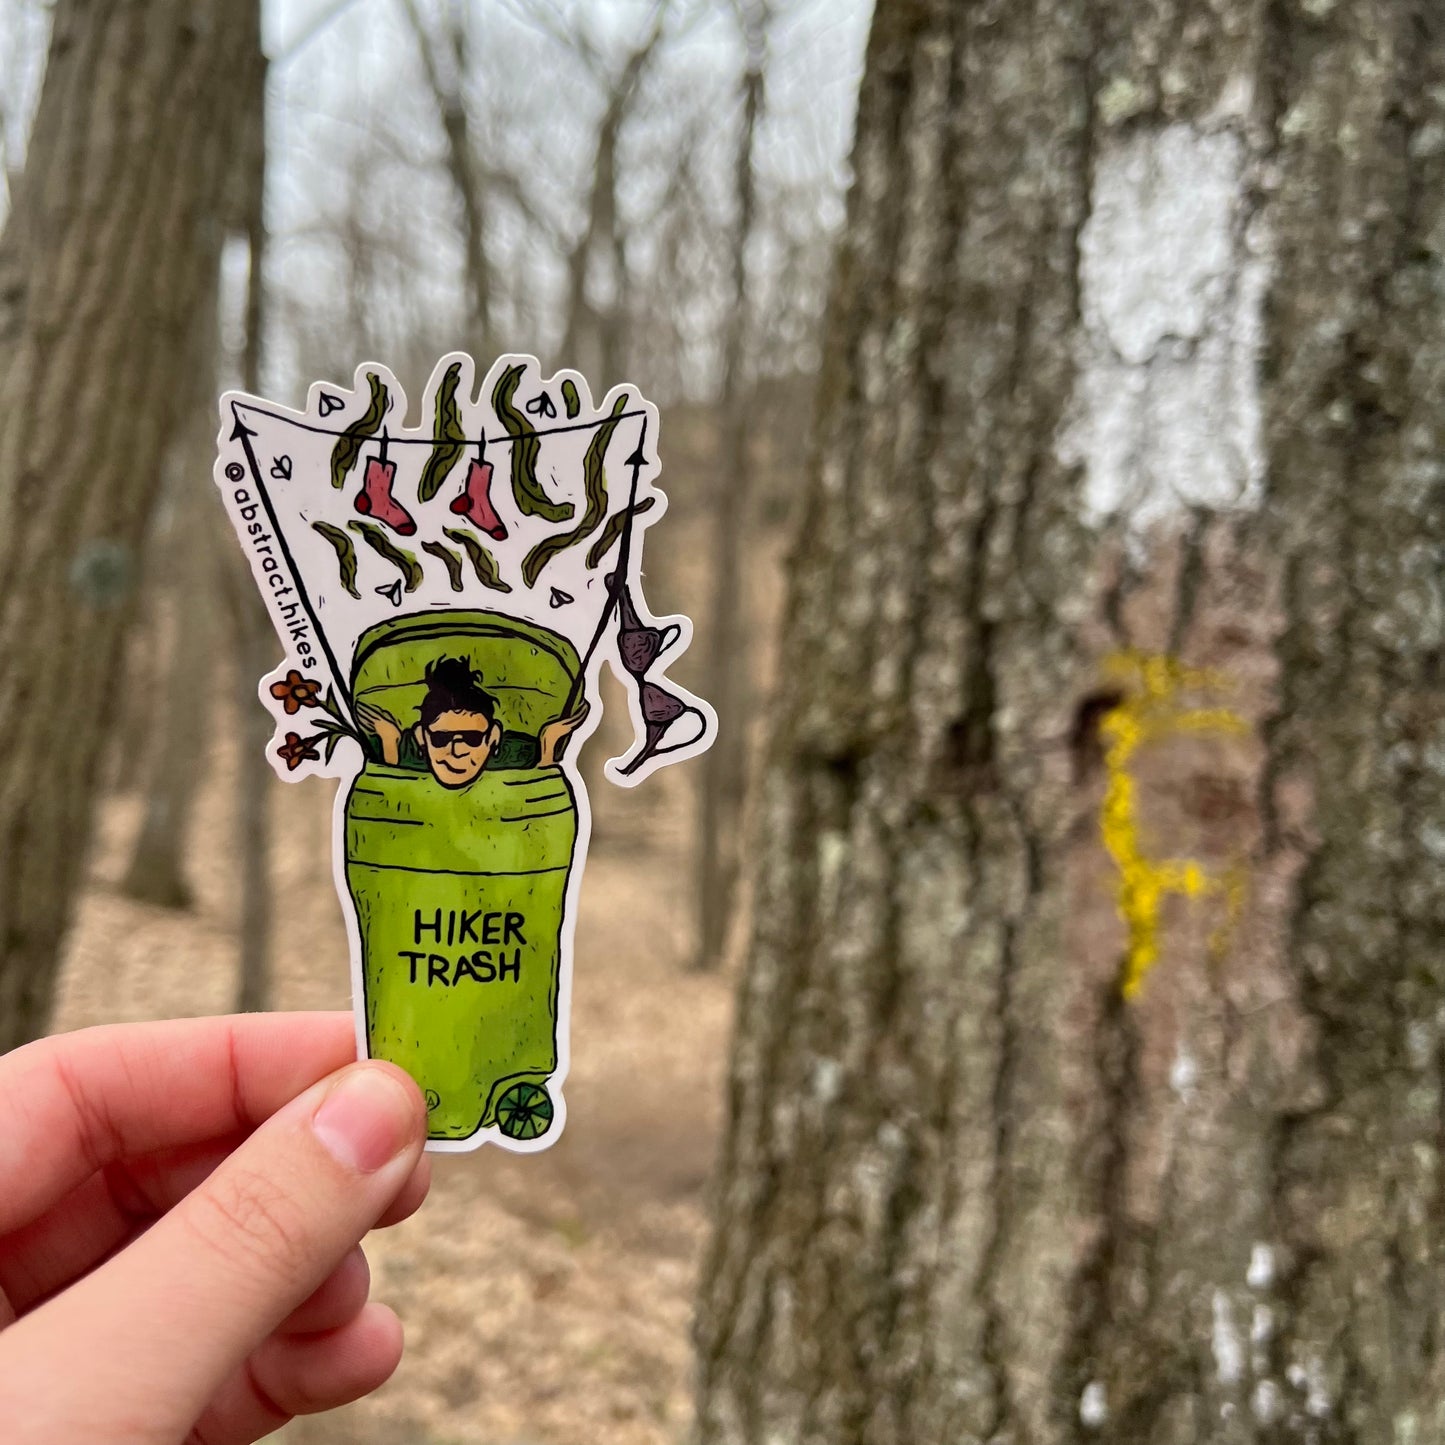 Hiking Sticker: "Hiker Trash Woman"